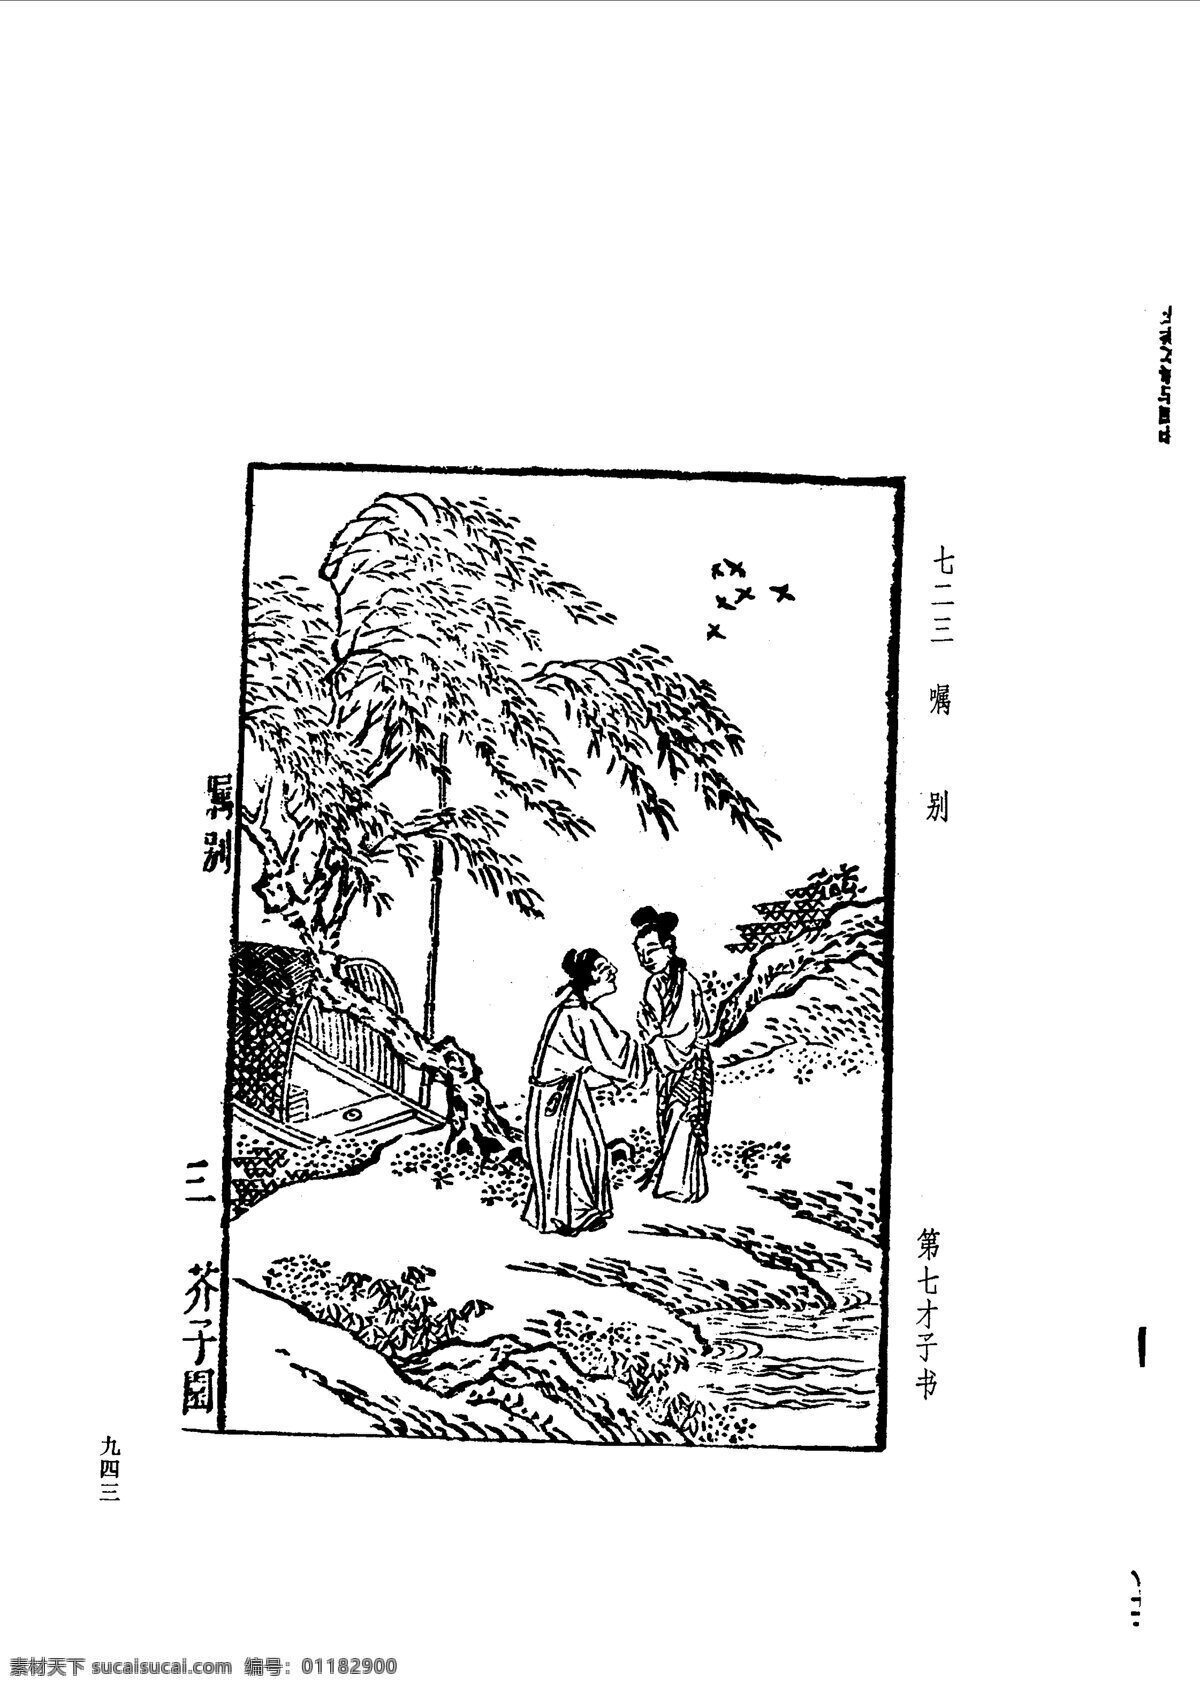 中国 古典文学 版画 选集 上 下册0971 设计素材 版画世界 书画美术 白色